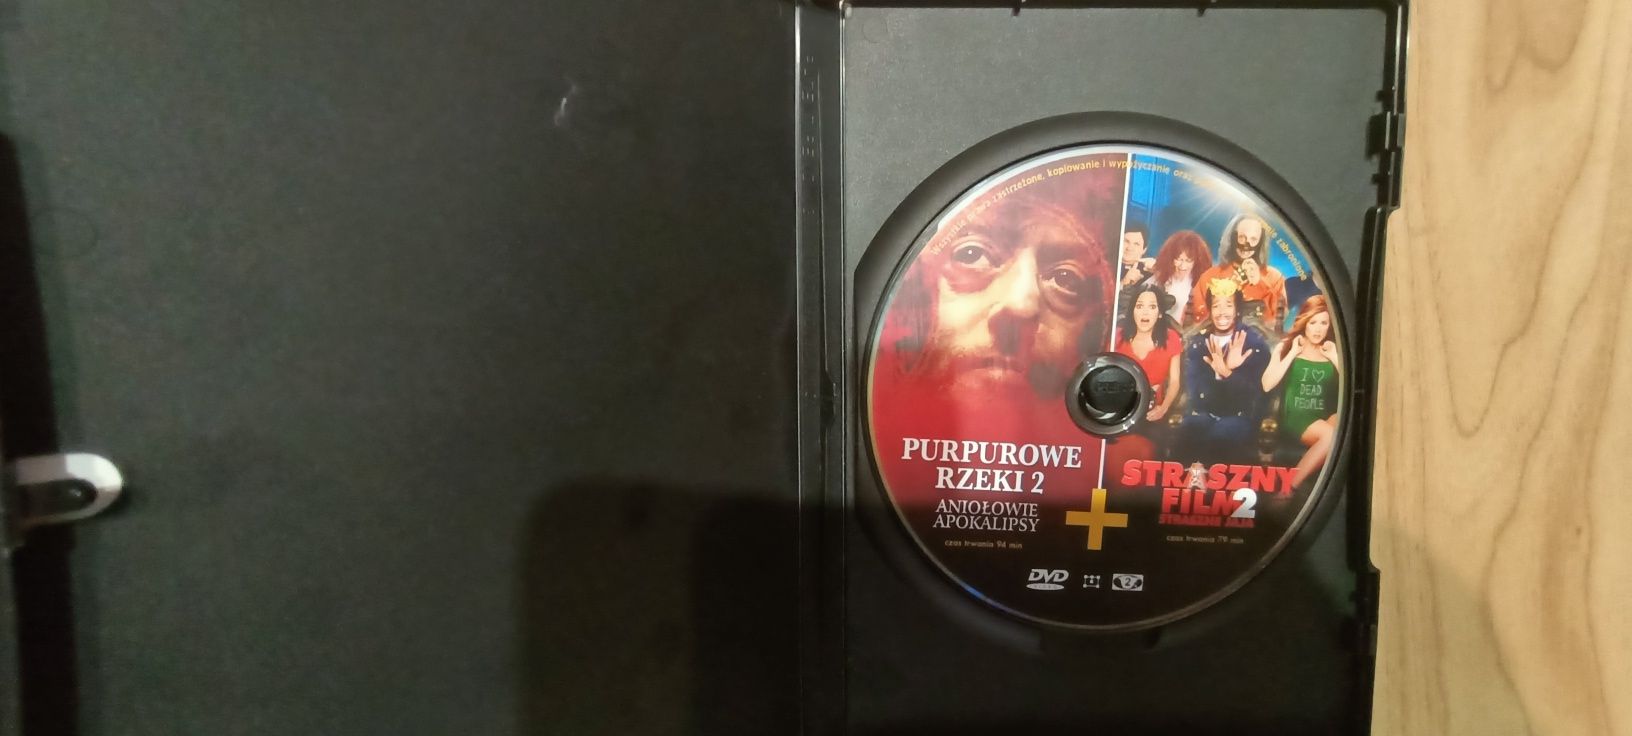 Filmy na DVD Purpurowe rzeki i Straszny film 2